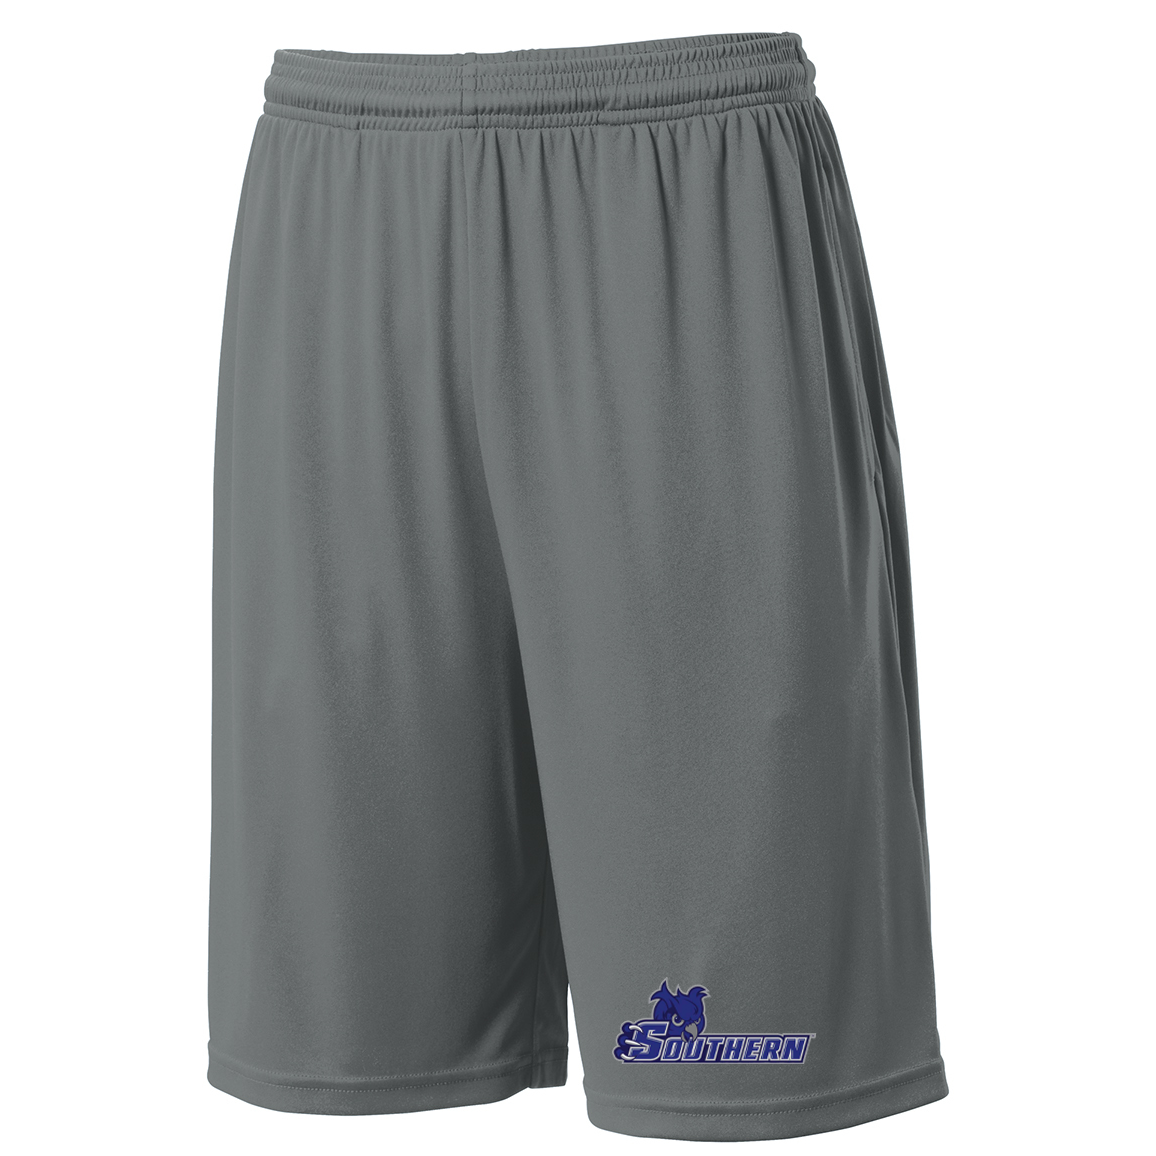 SCSU Lacrosse Shorts